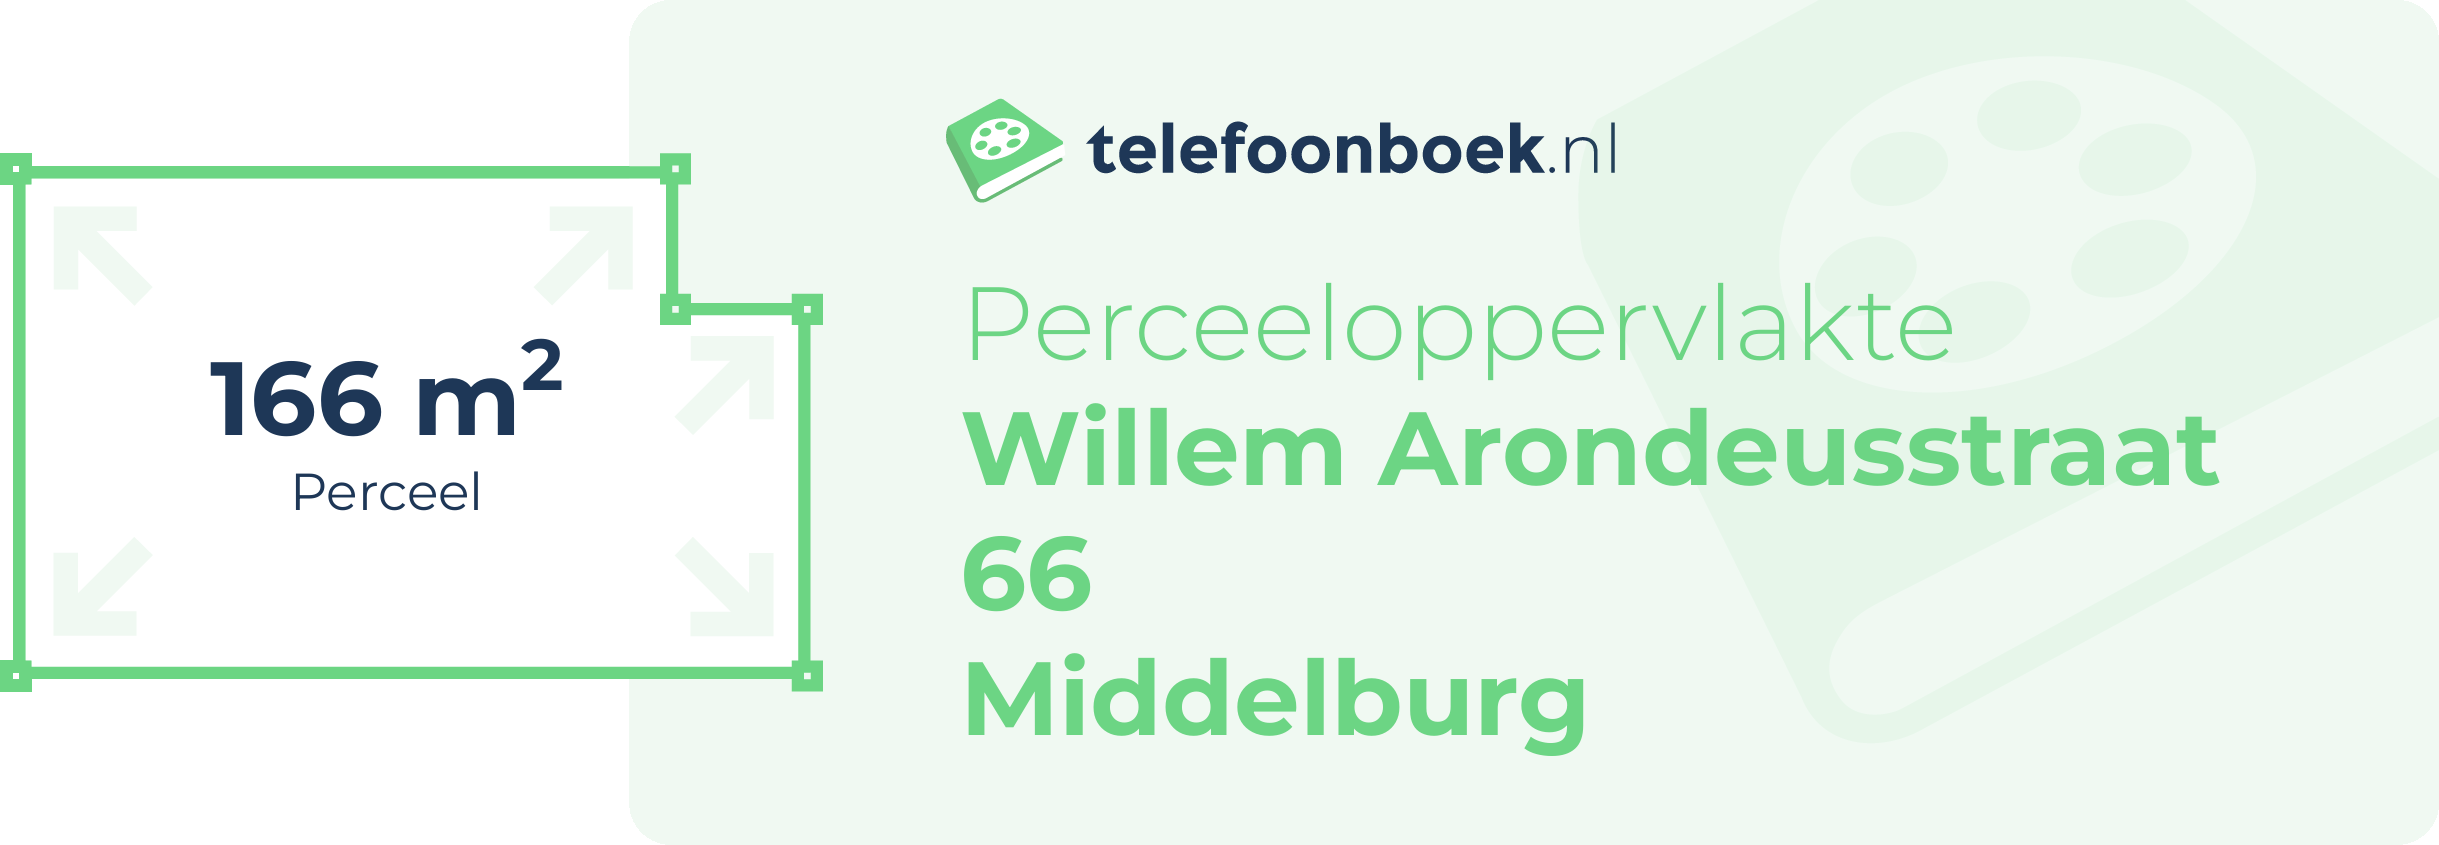 Perceeloppervlakte Willem Arondeusstraat 66 Middelburg